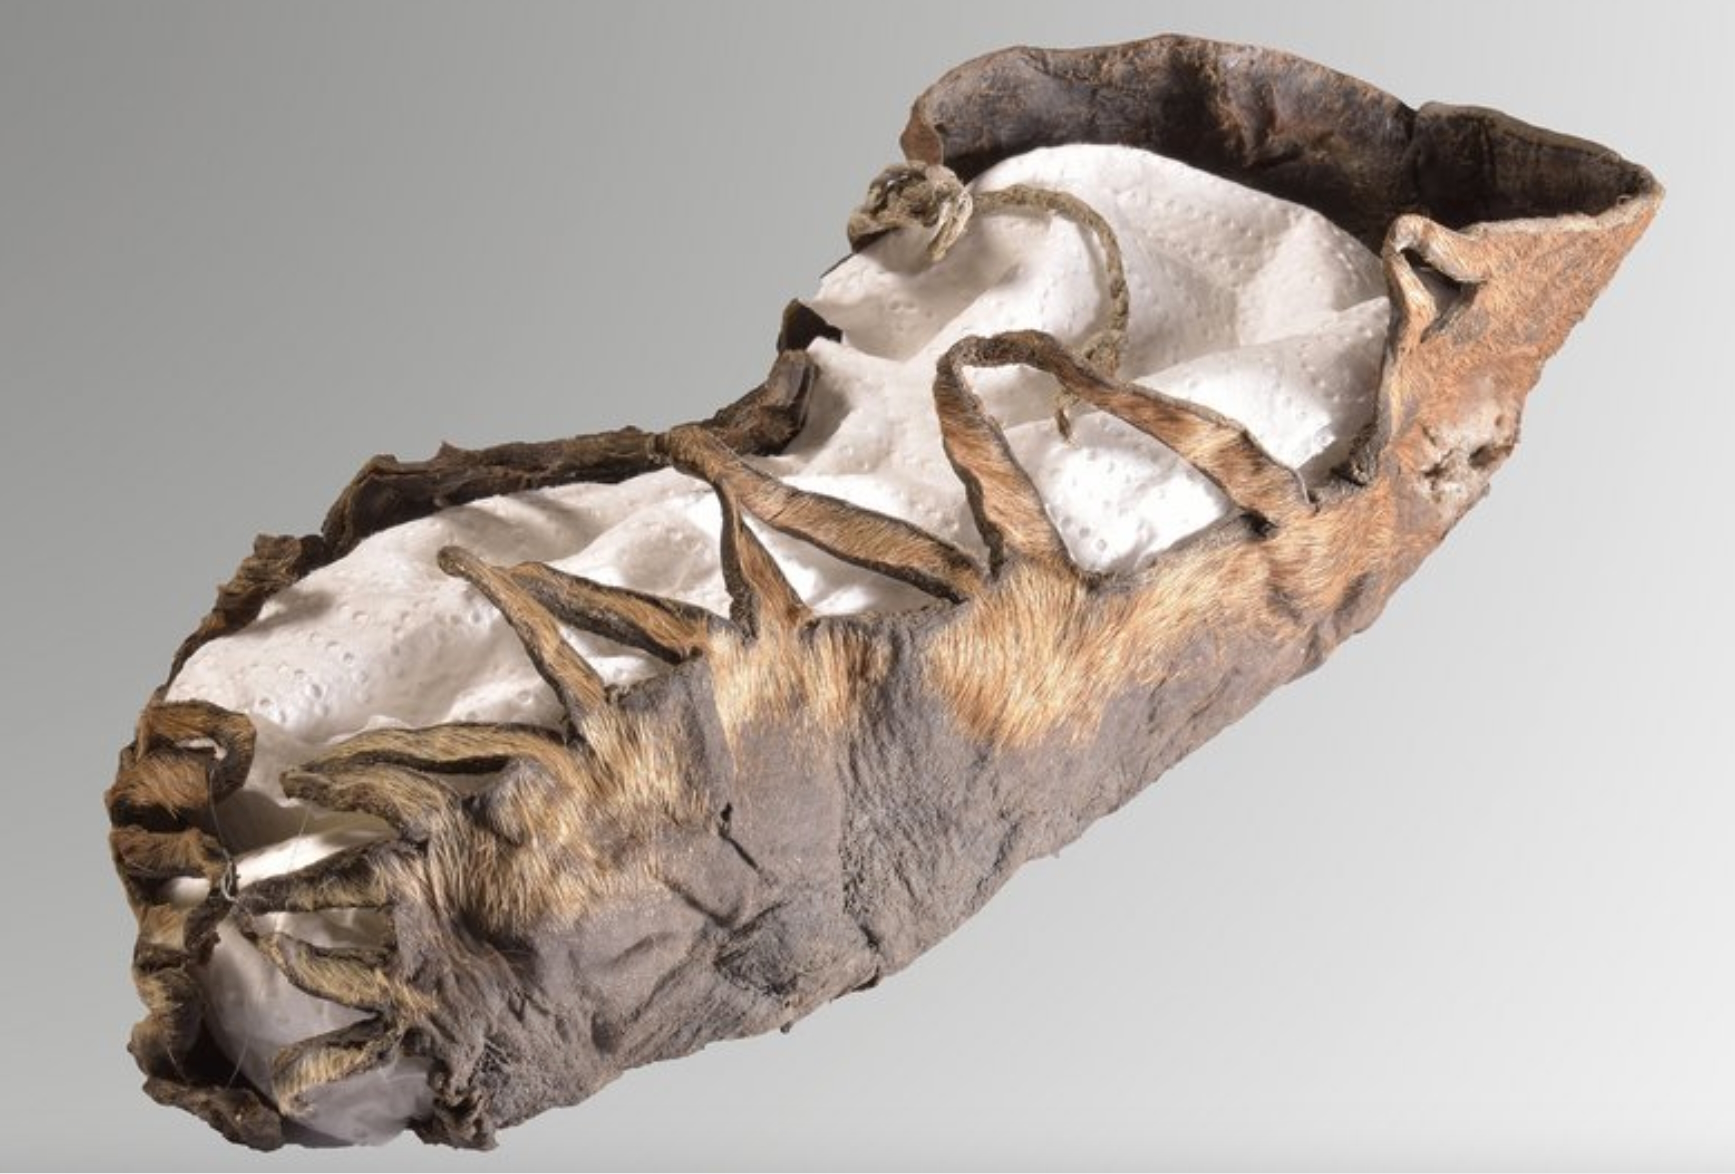 2,000-year-old child’s shoe found in salt mine